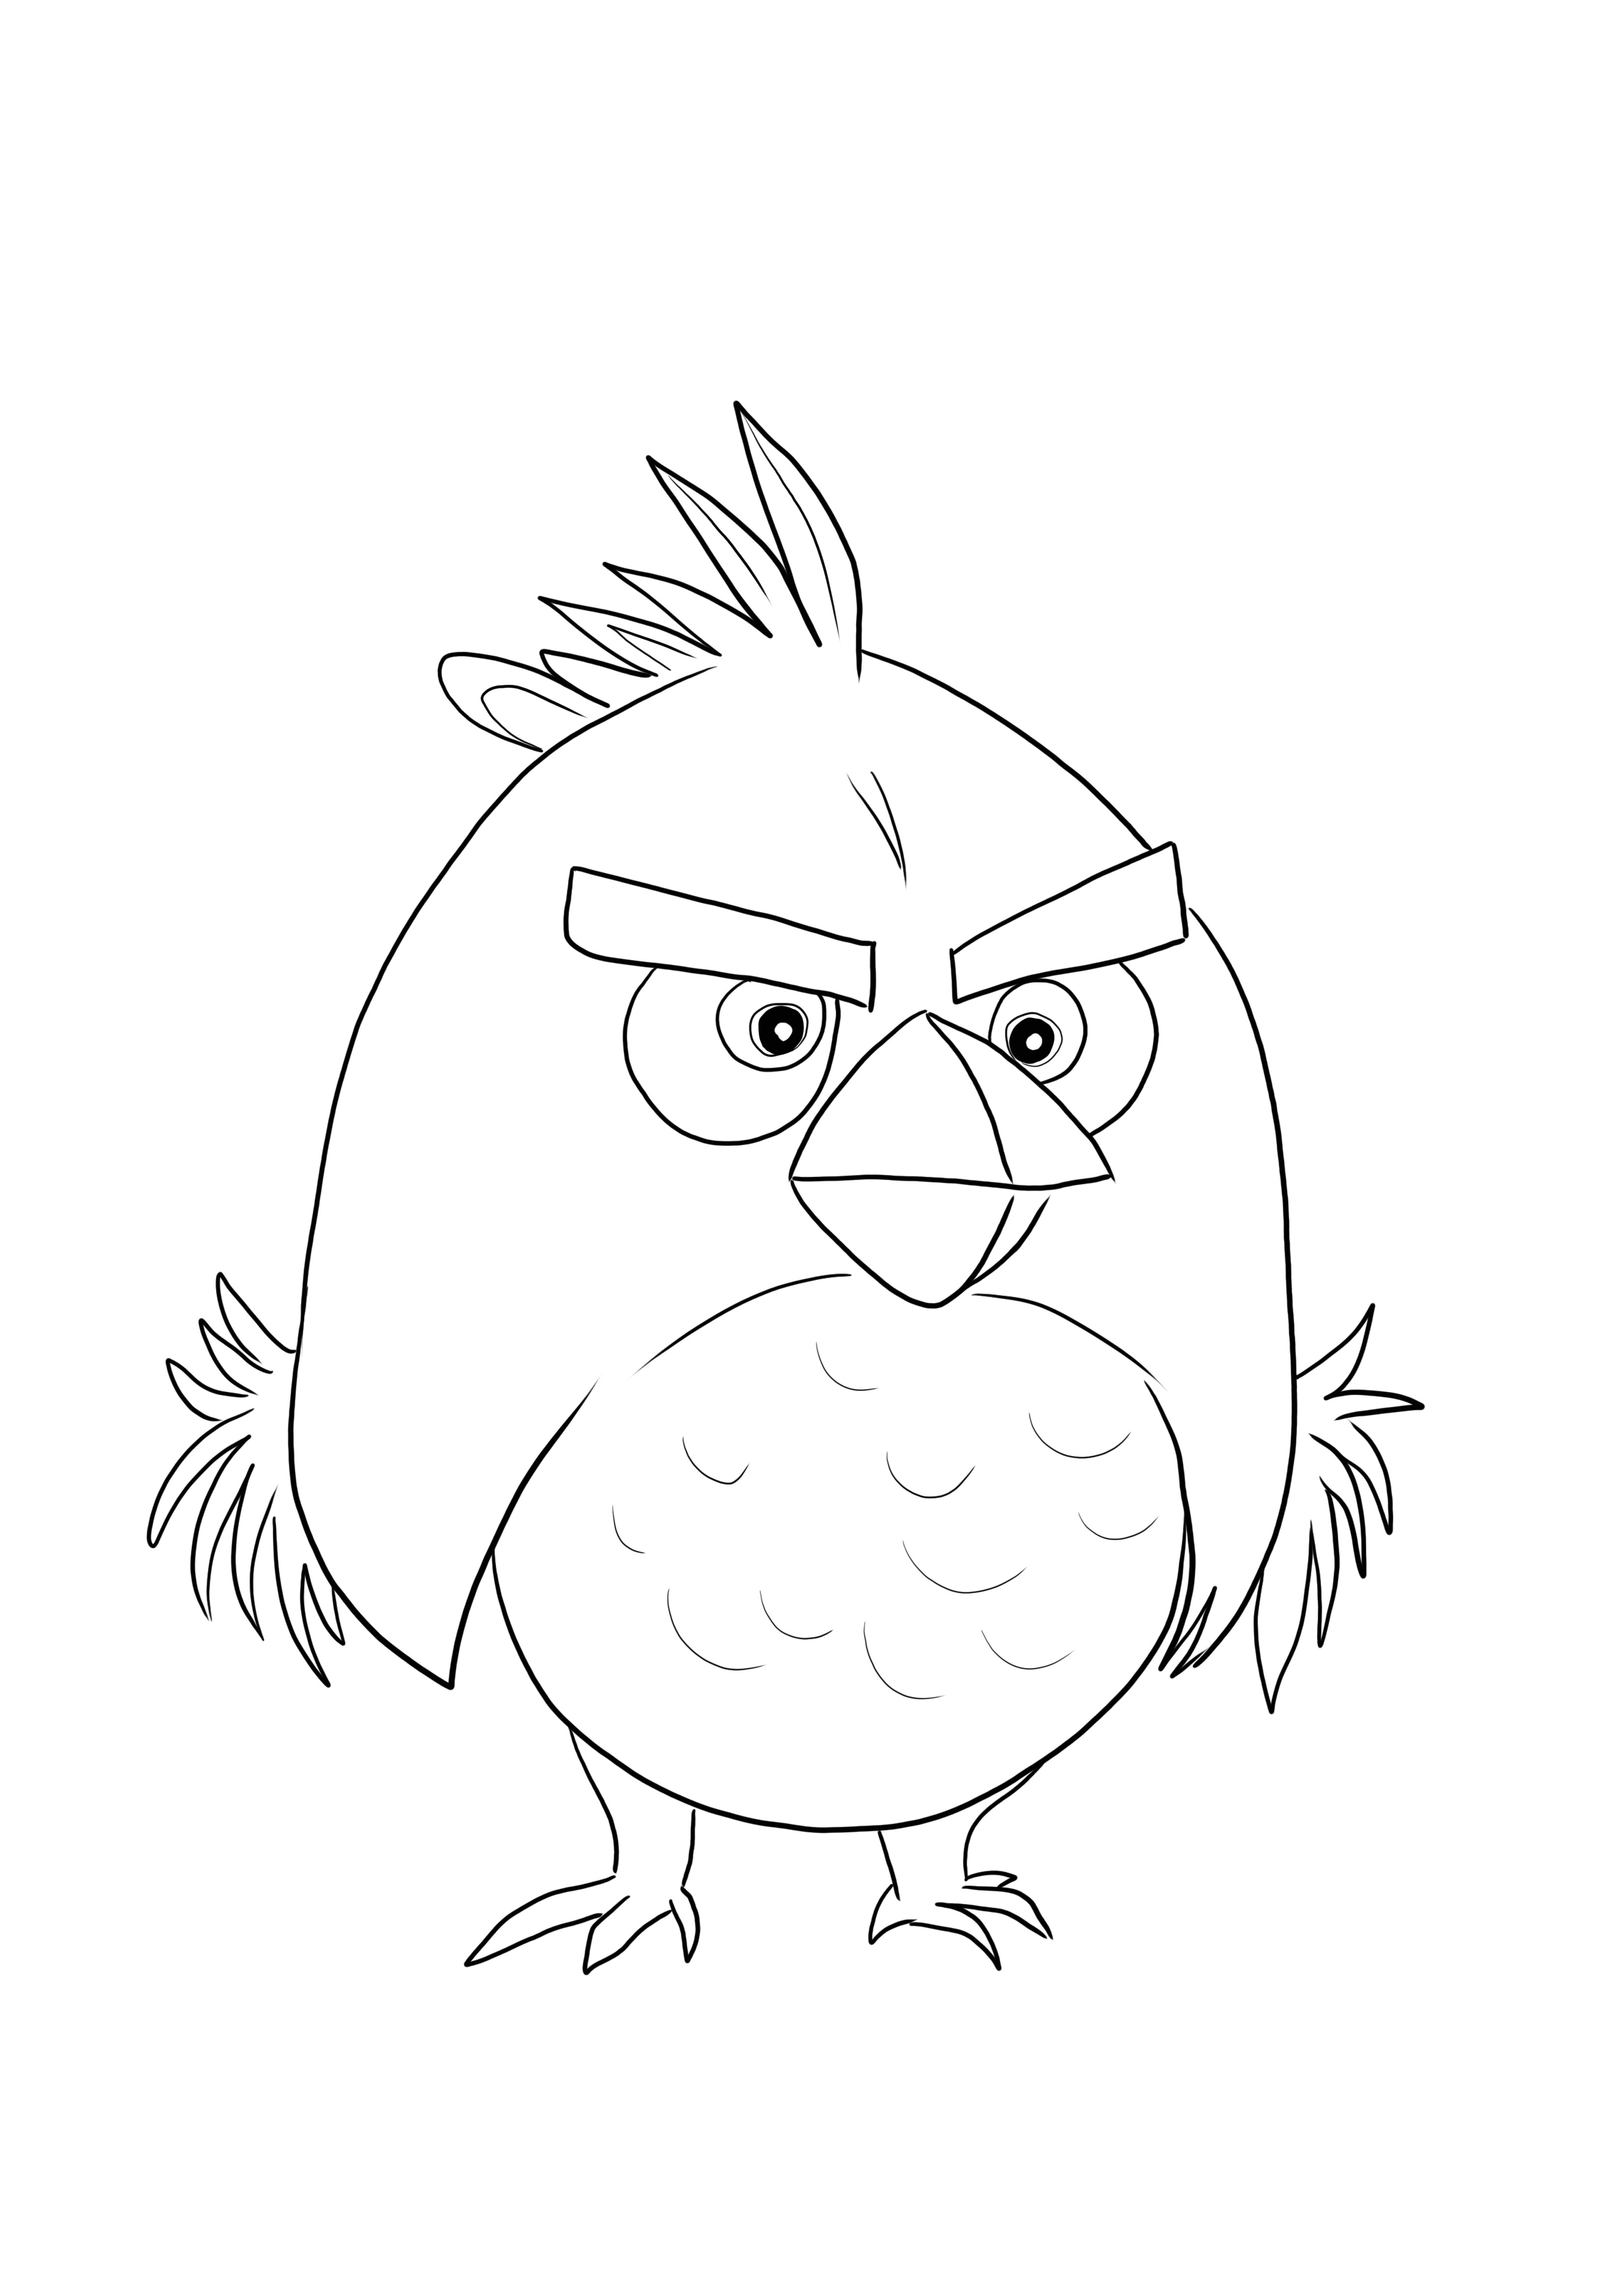 Red Bird do Angry Birds está pronto para ser impresso e colorido com as cores de sua preferência